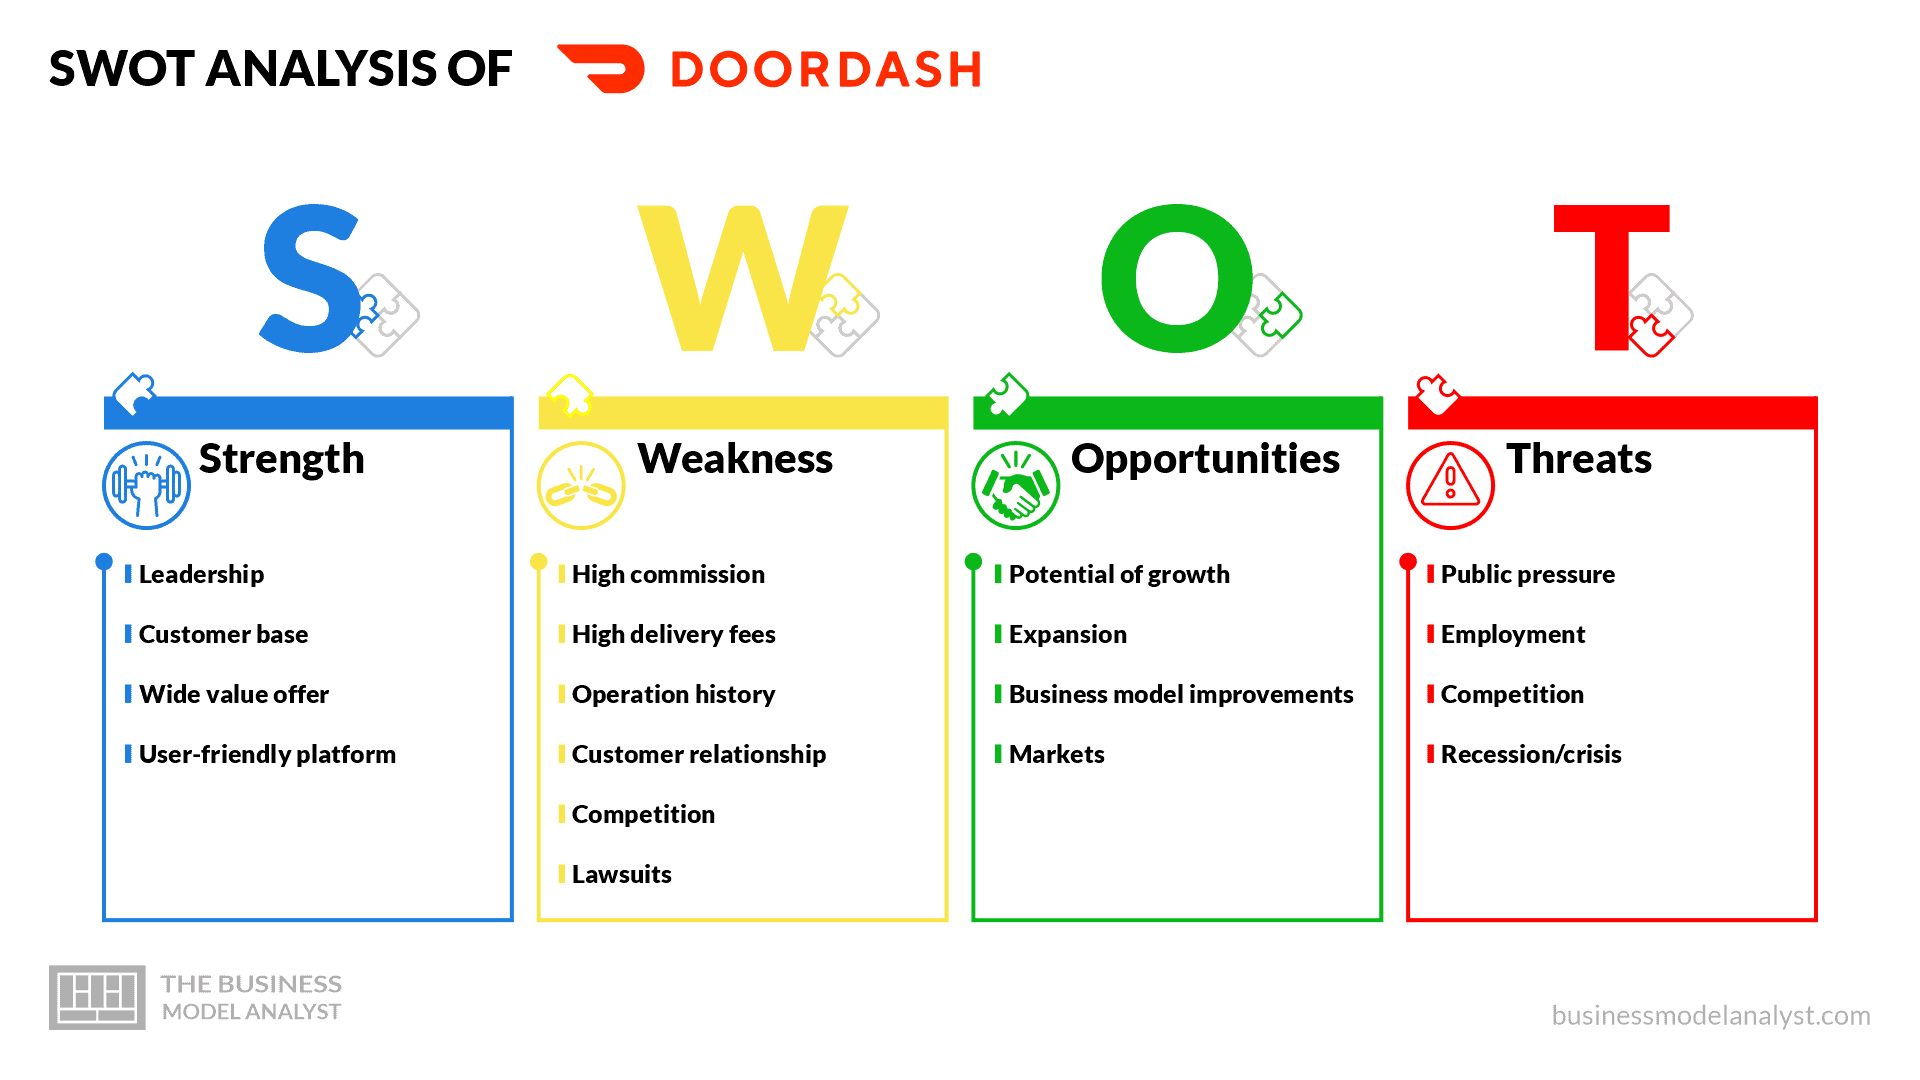 DoorDash Customer Service for Customers, Drivers, & Merchants